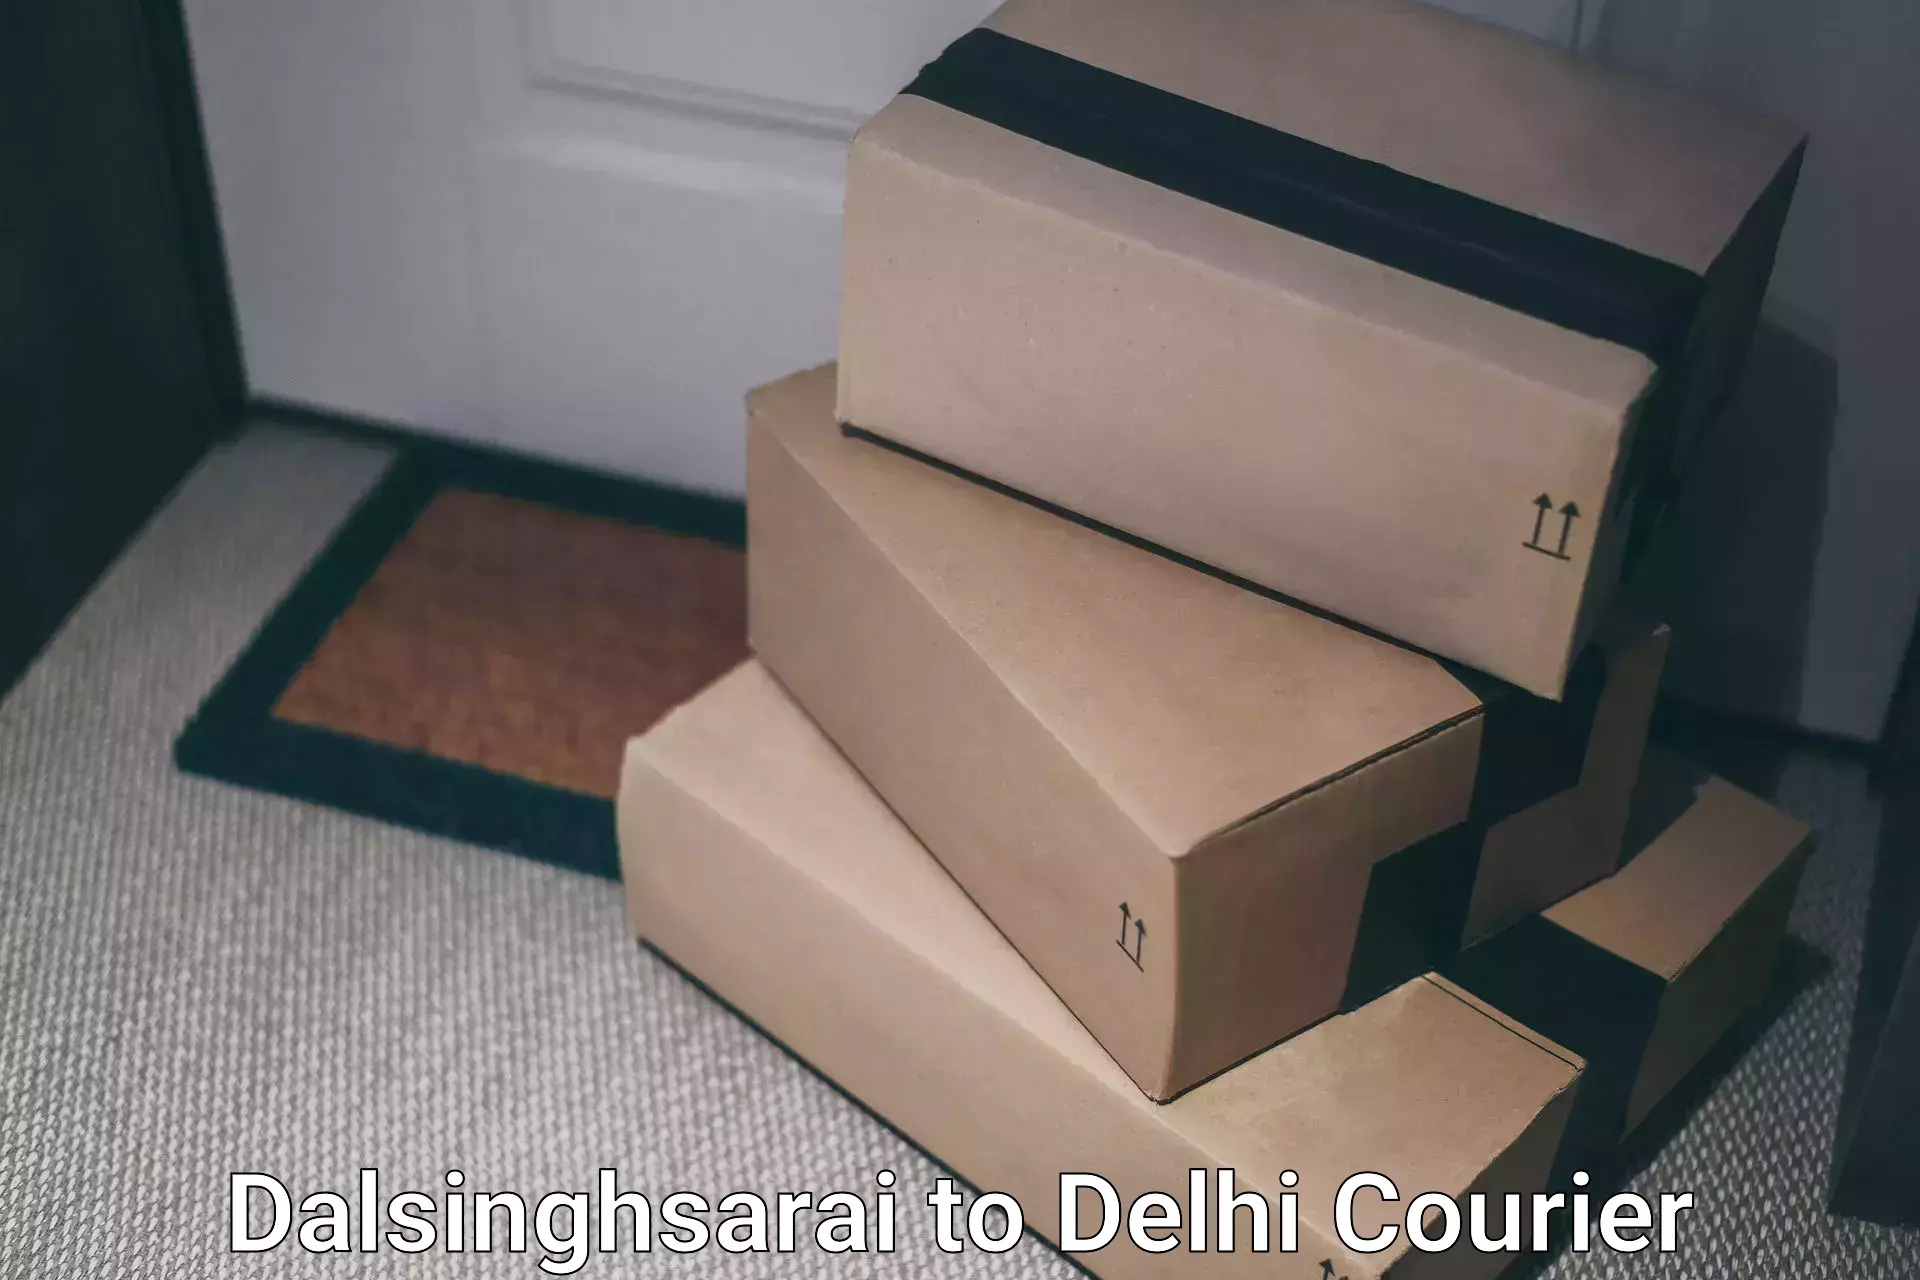 Premium delivery services Dalsinghsarai to Delhi